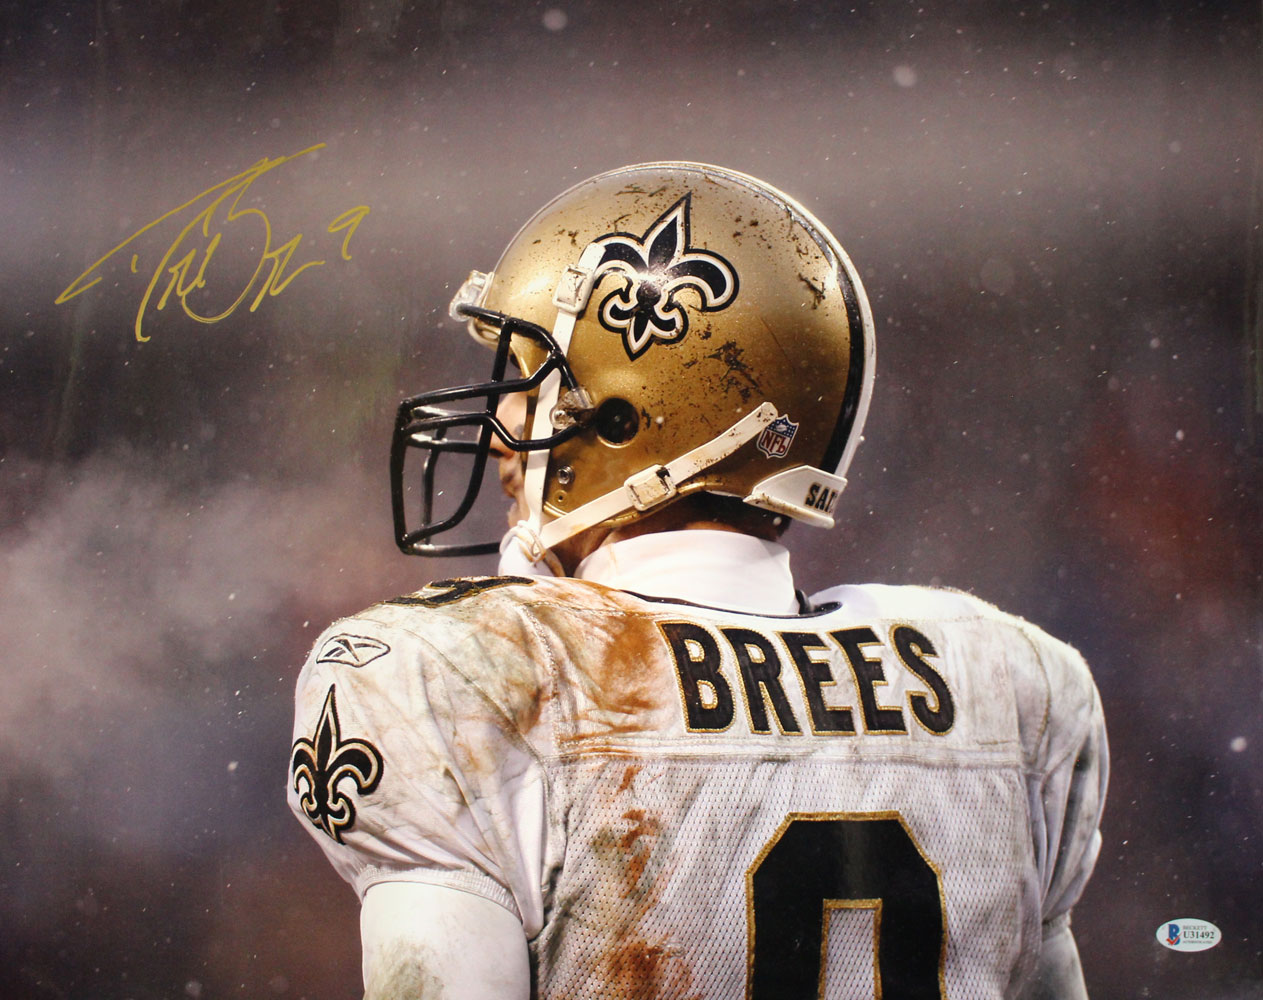 Drew Brees Autographed/Signed New Orleans Saints 16x20 Photo BAS 29029